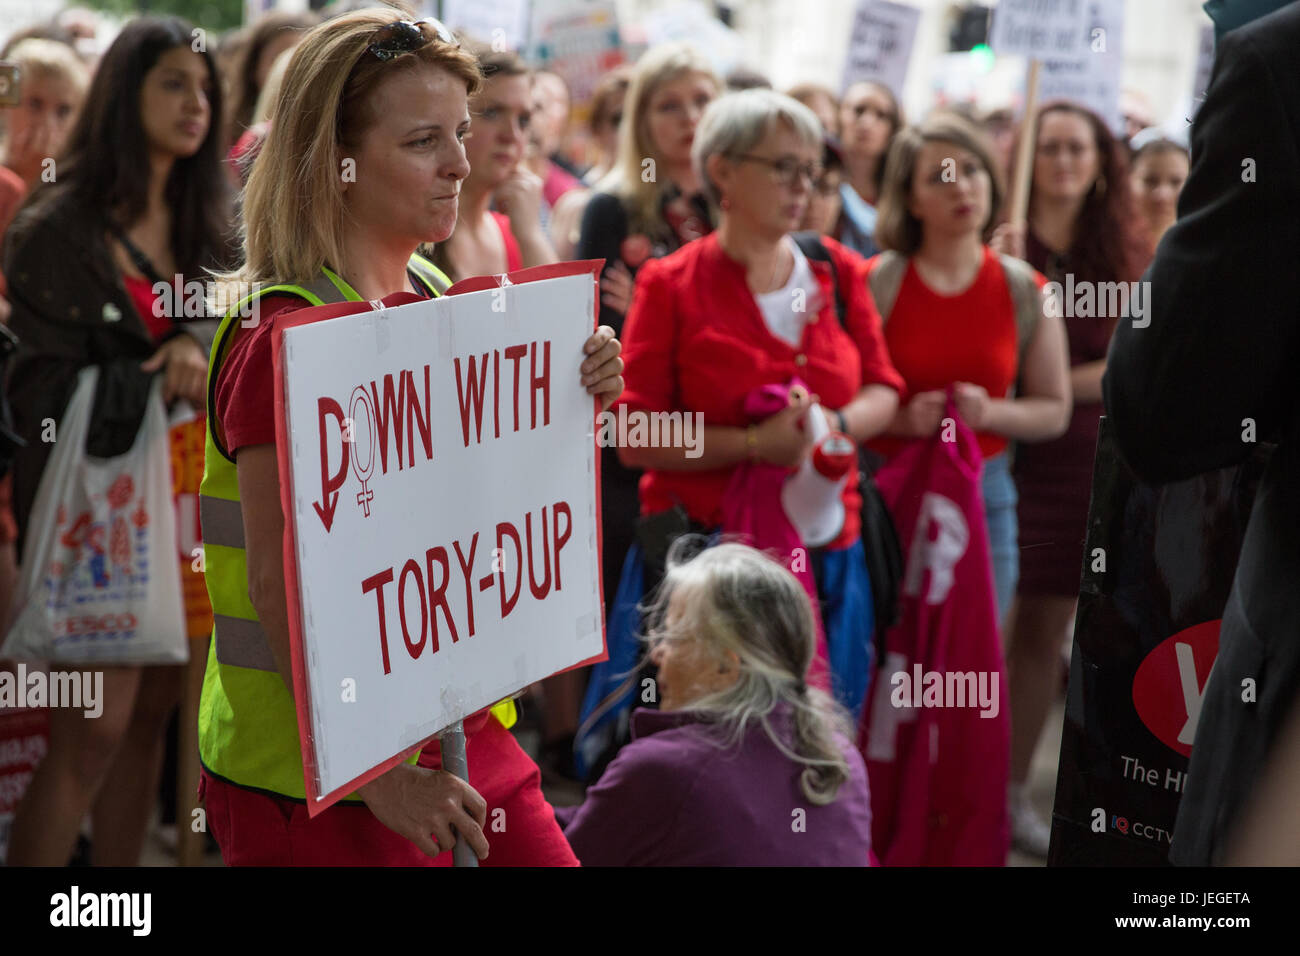 Londres, Reino Unido. 24 de junio de 2017. Las mujeres, muchos de ellos vestidos de rojo, la protesta frente a Downing Street en contra de cualquier acuerdo entre el Partido Conservador y el Partido Democrático Unionista (DUP). Las mujeres hablaron contra el DUP restricciones sobre los derechos de las mujeres y las personas LGBT y enlaces a lejos- derecho política y también en apoyo del derecho al acceso al aborto en Irlanda del Norte. Crédito: Mark Kerrison/Alamy Live News Foto de stock